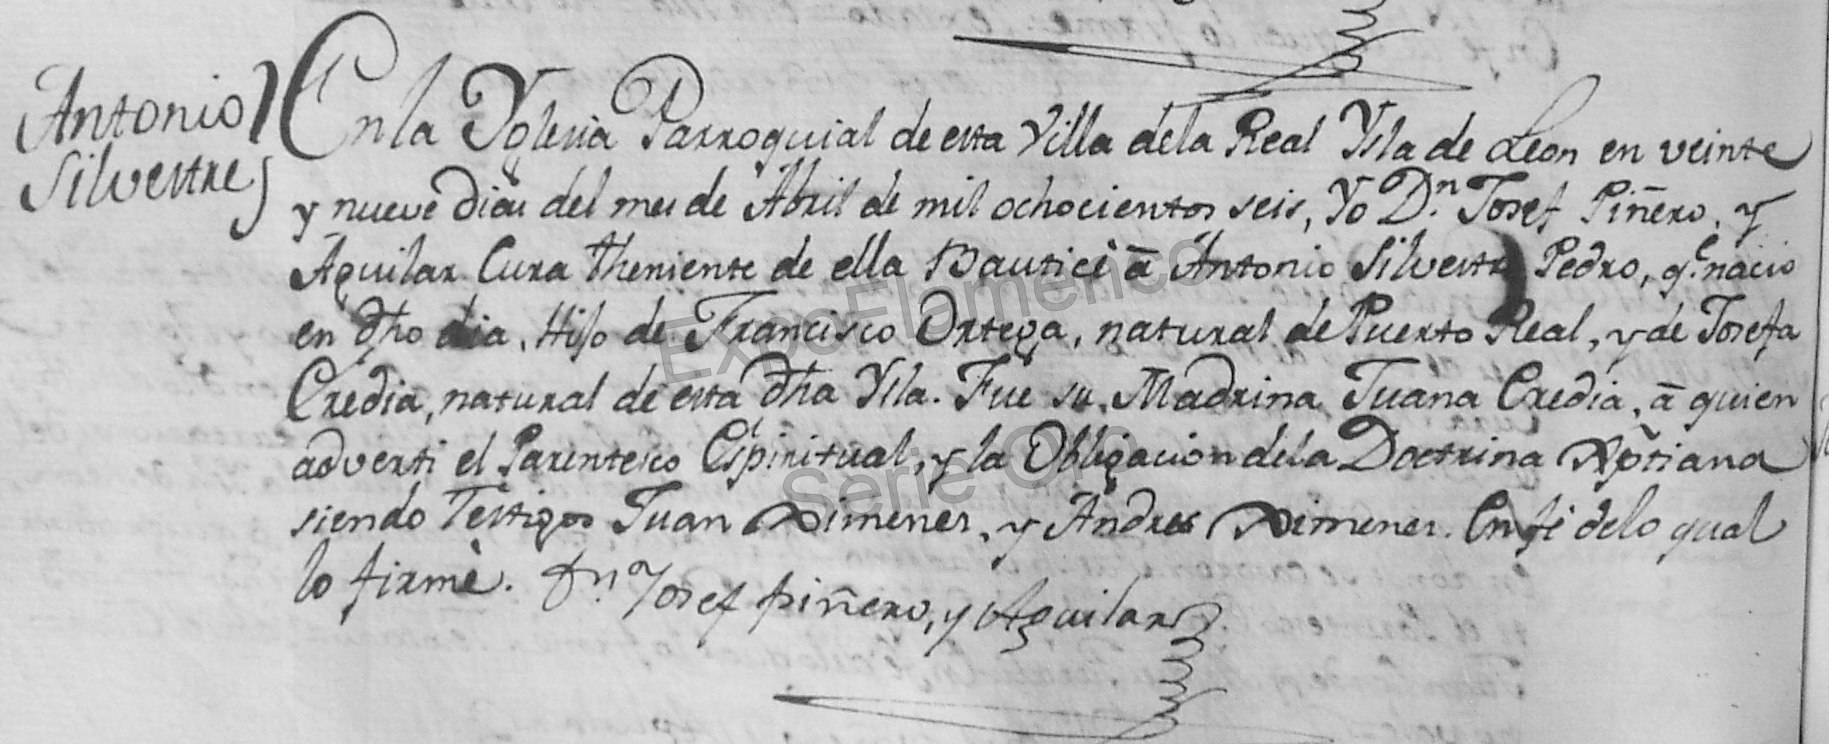 Partida bautismal de Antonio El Fillo. Archivo Luis Javier Vázquez Morilla.